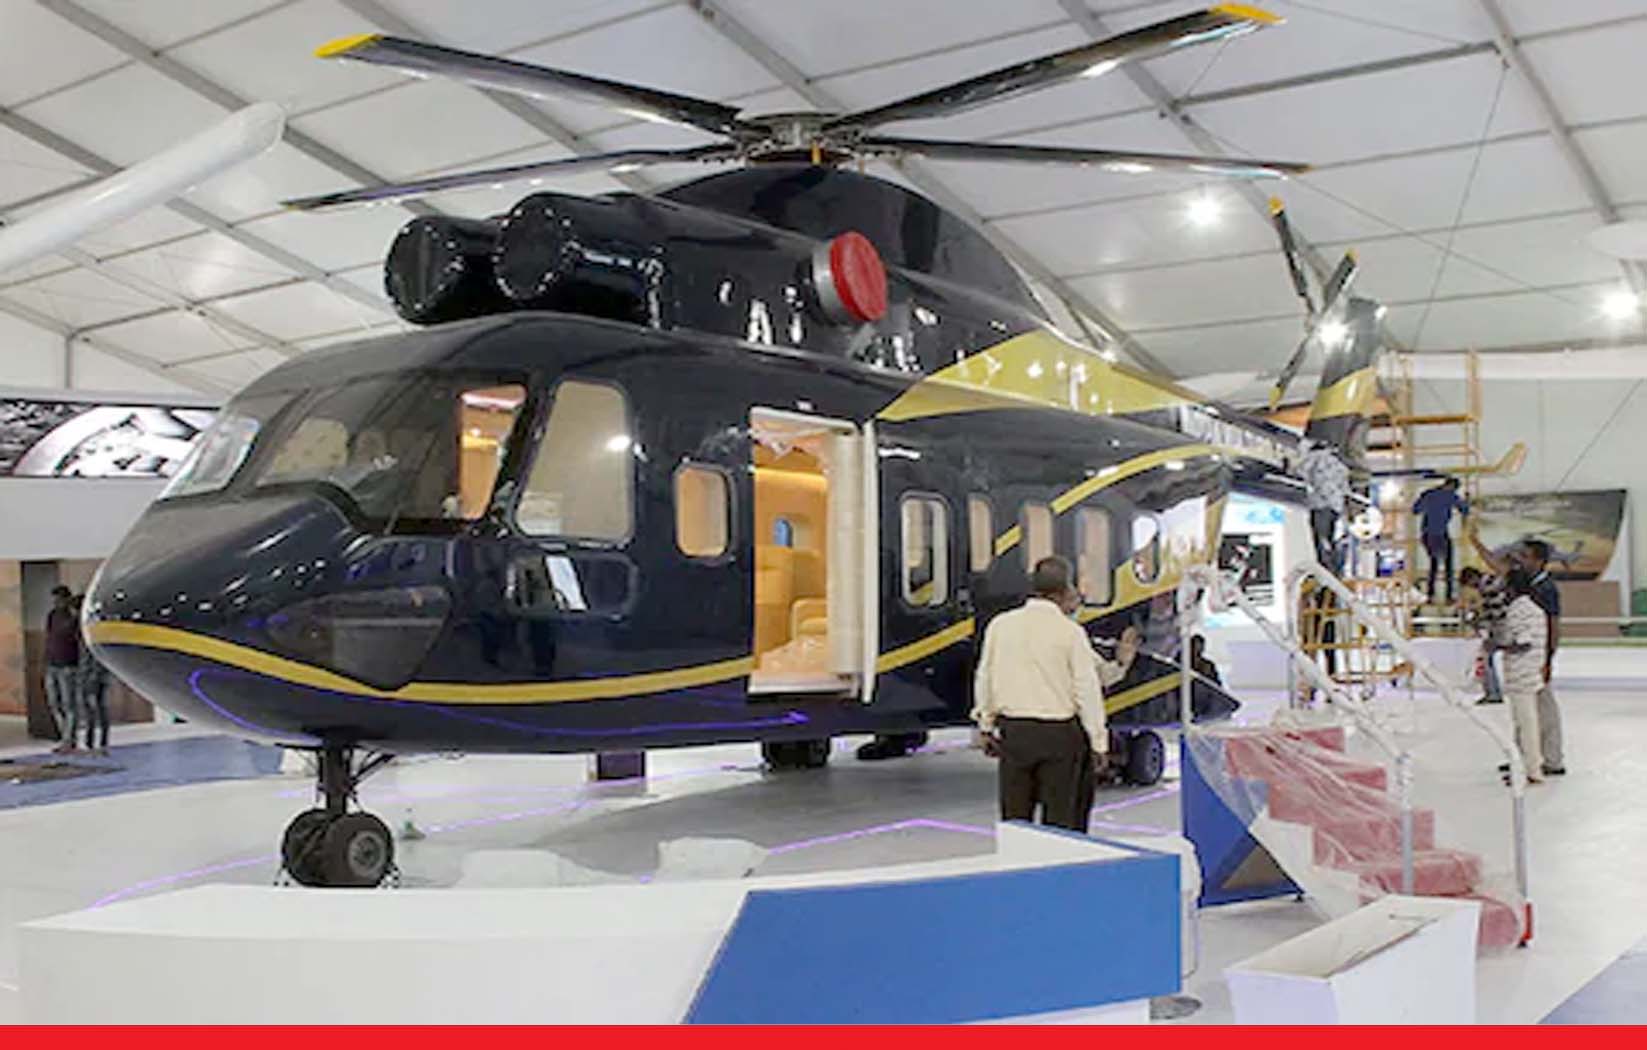 अब भारत की प्राइवेट कंपनियां भी बना सकेंगी सेना के लिए हेलीकॉप्टर, रक्षा मंत्रालय से जल्द मिलेगी अनुमति